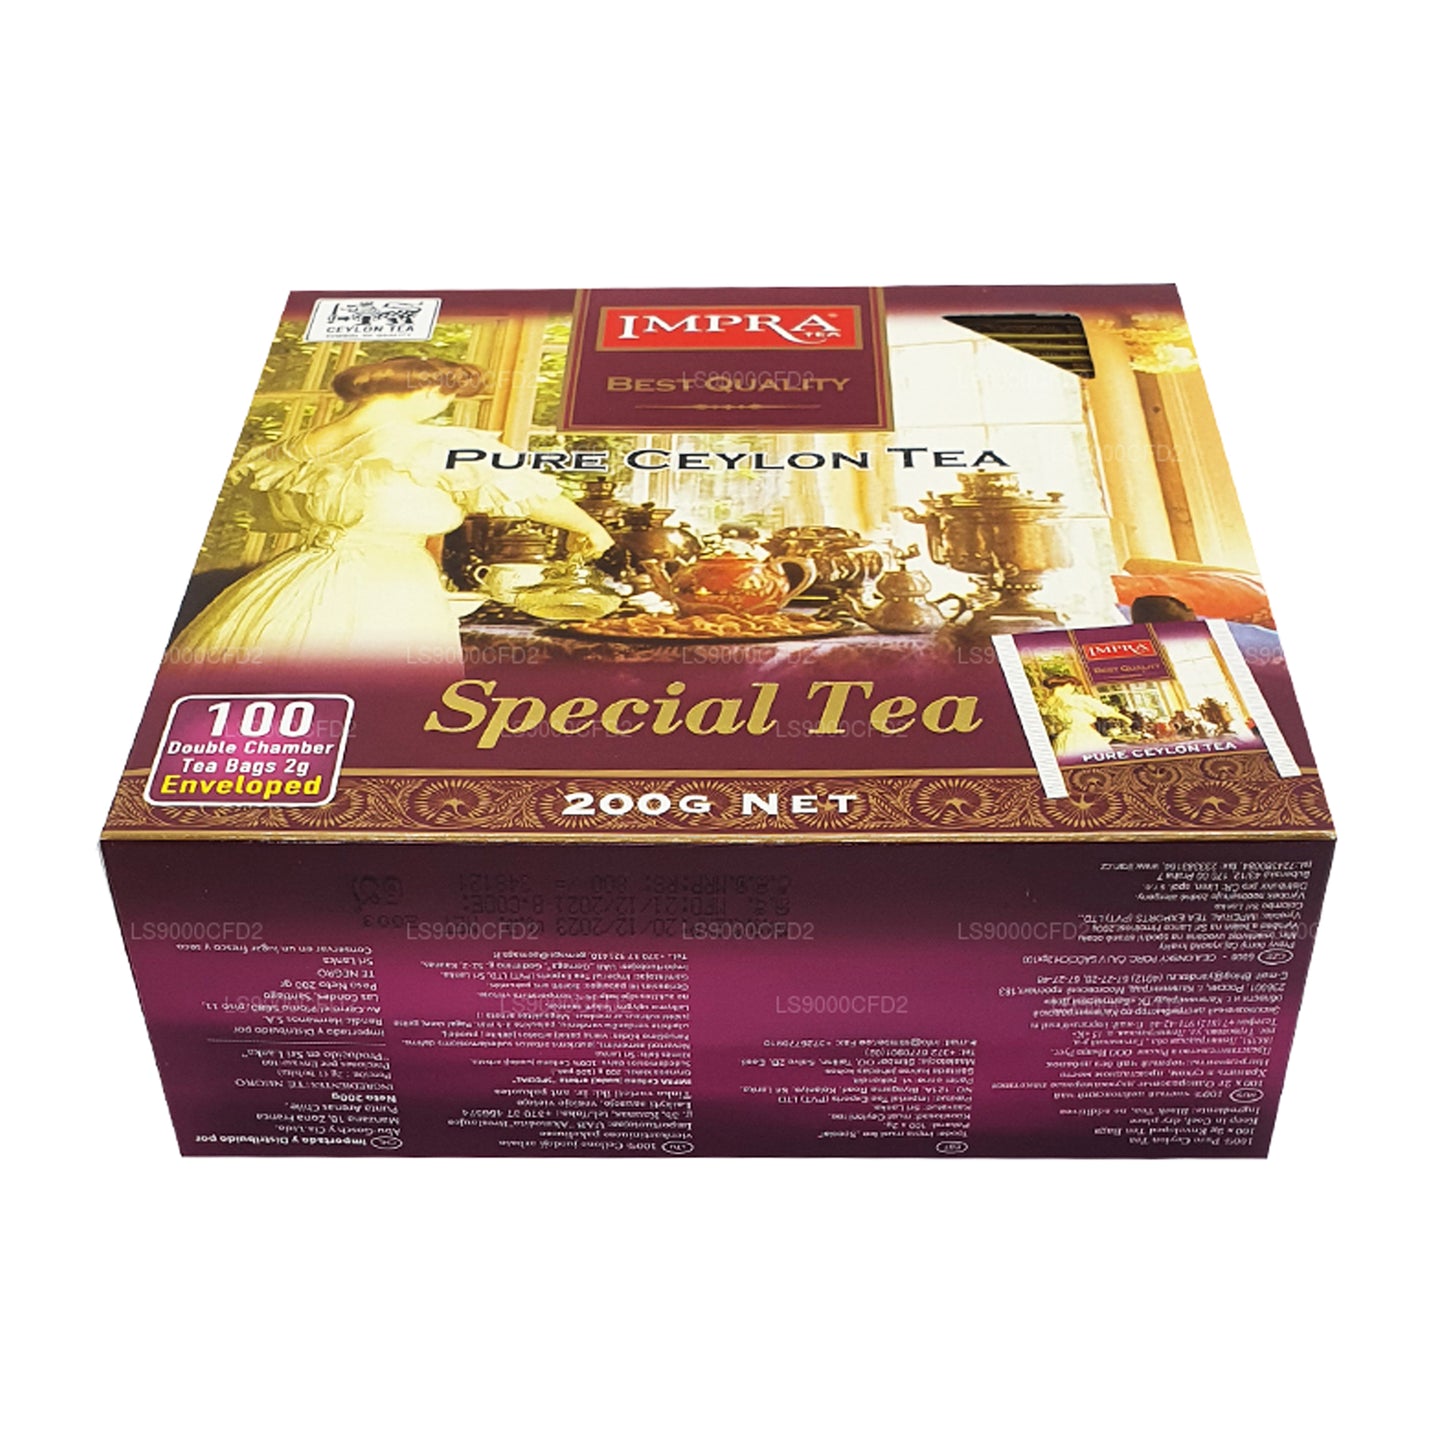 Impra Pure Ceylon Specjalna Herbata (200g)